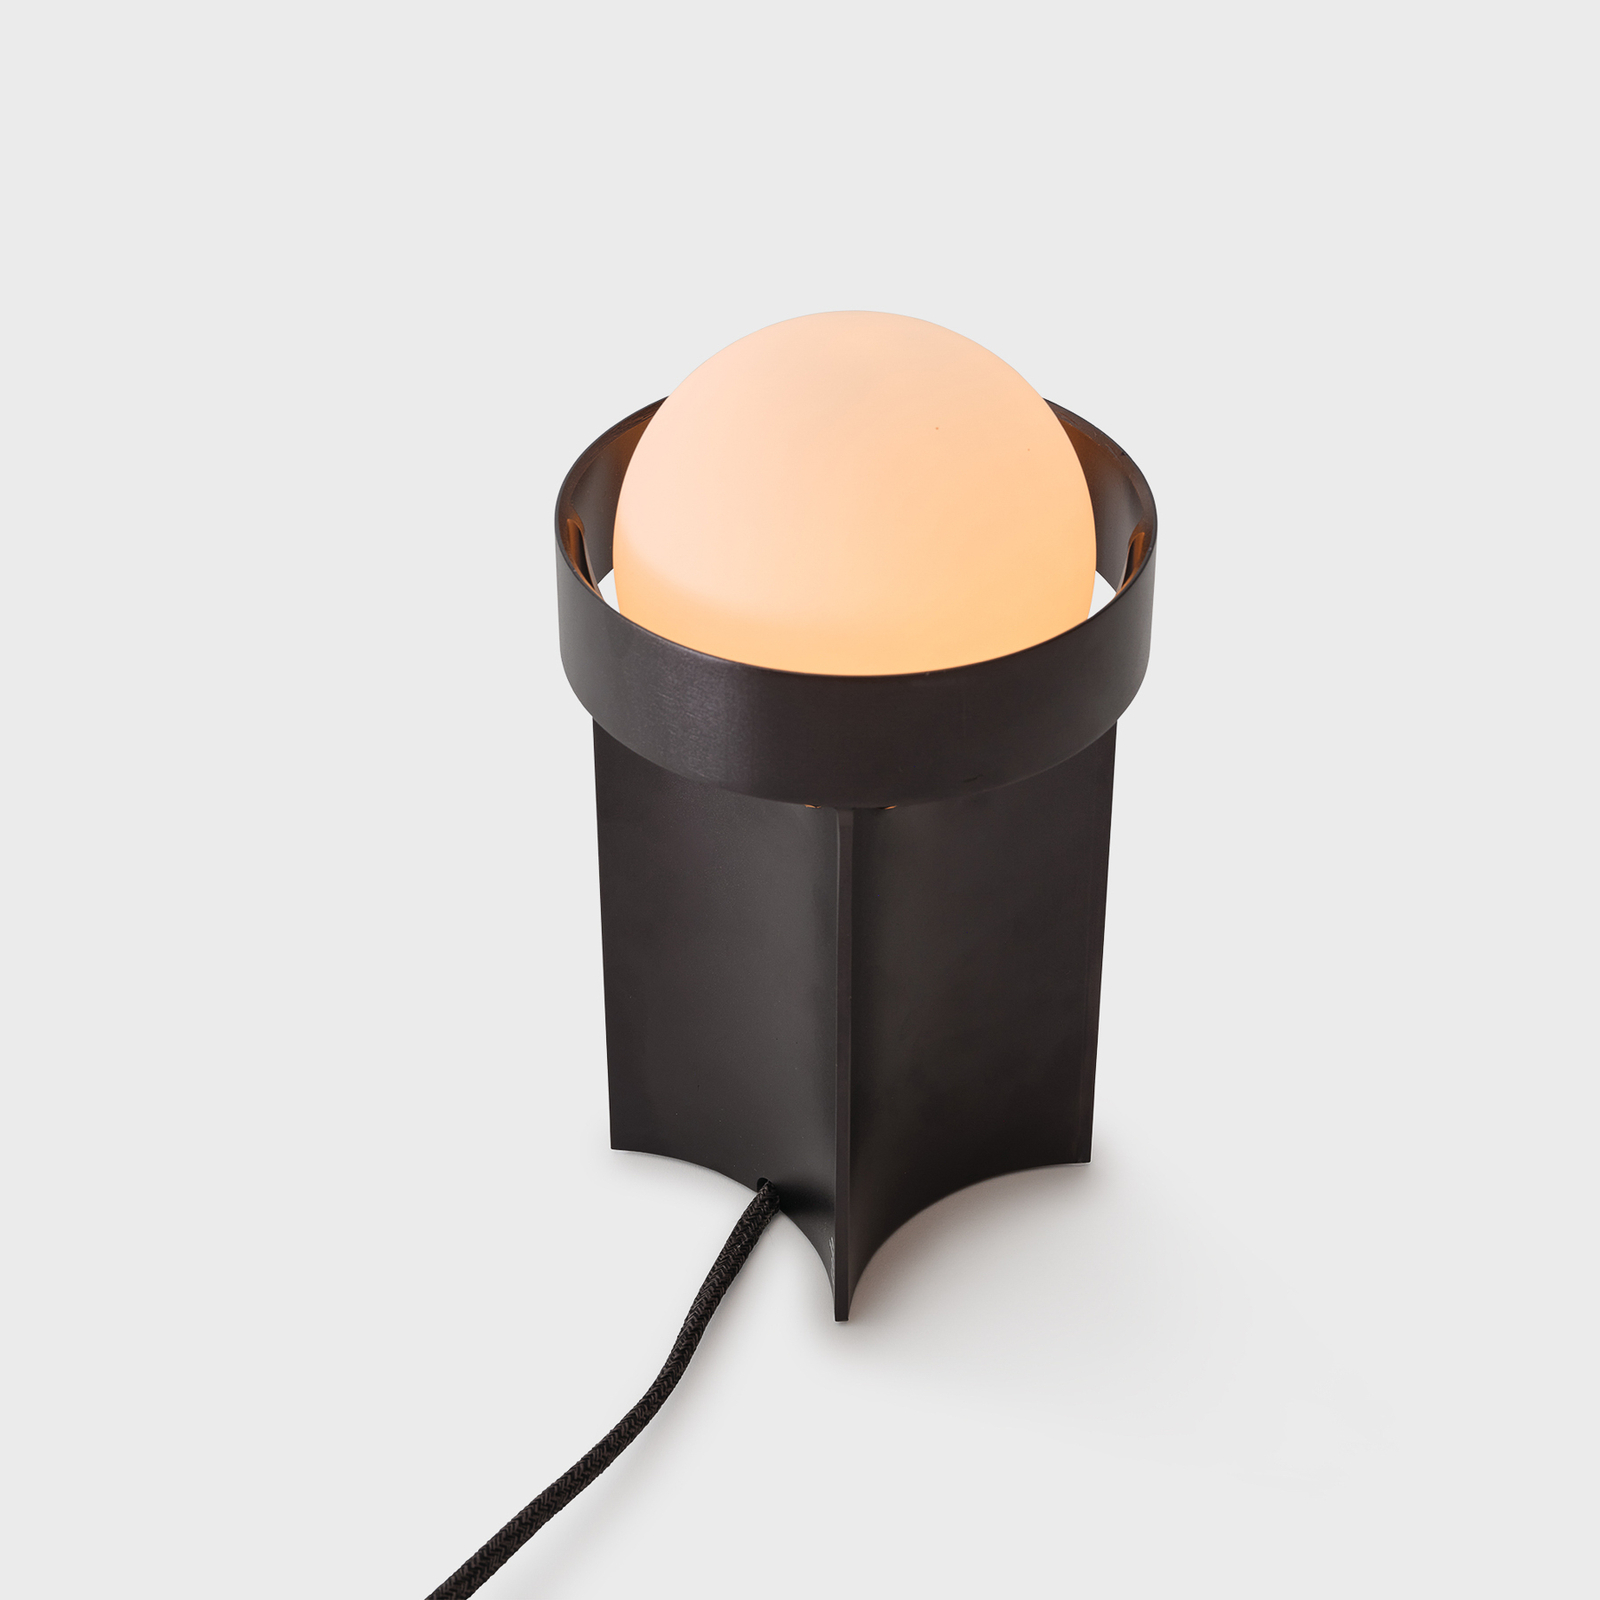 Tala tafellamp Loop small, aluminium, LED globe III, donkergrijs